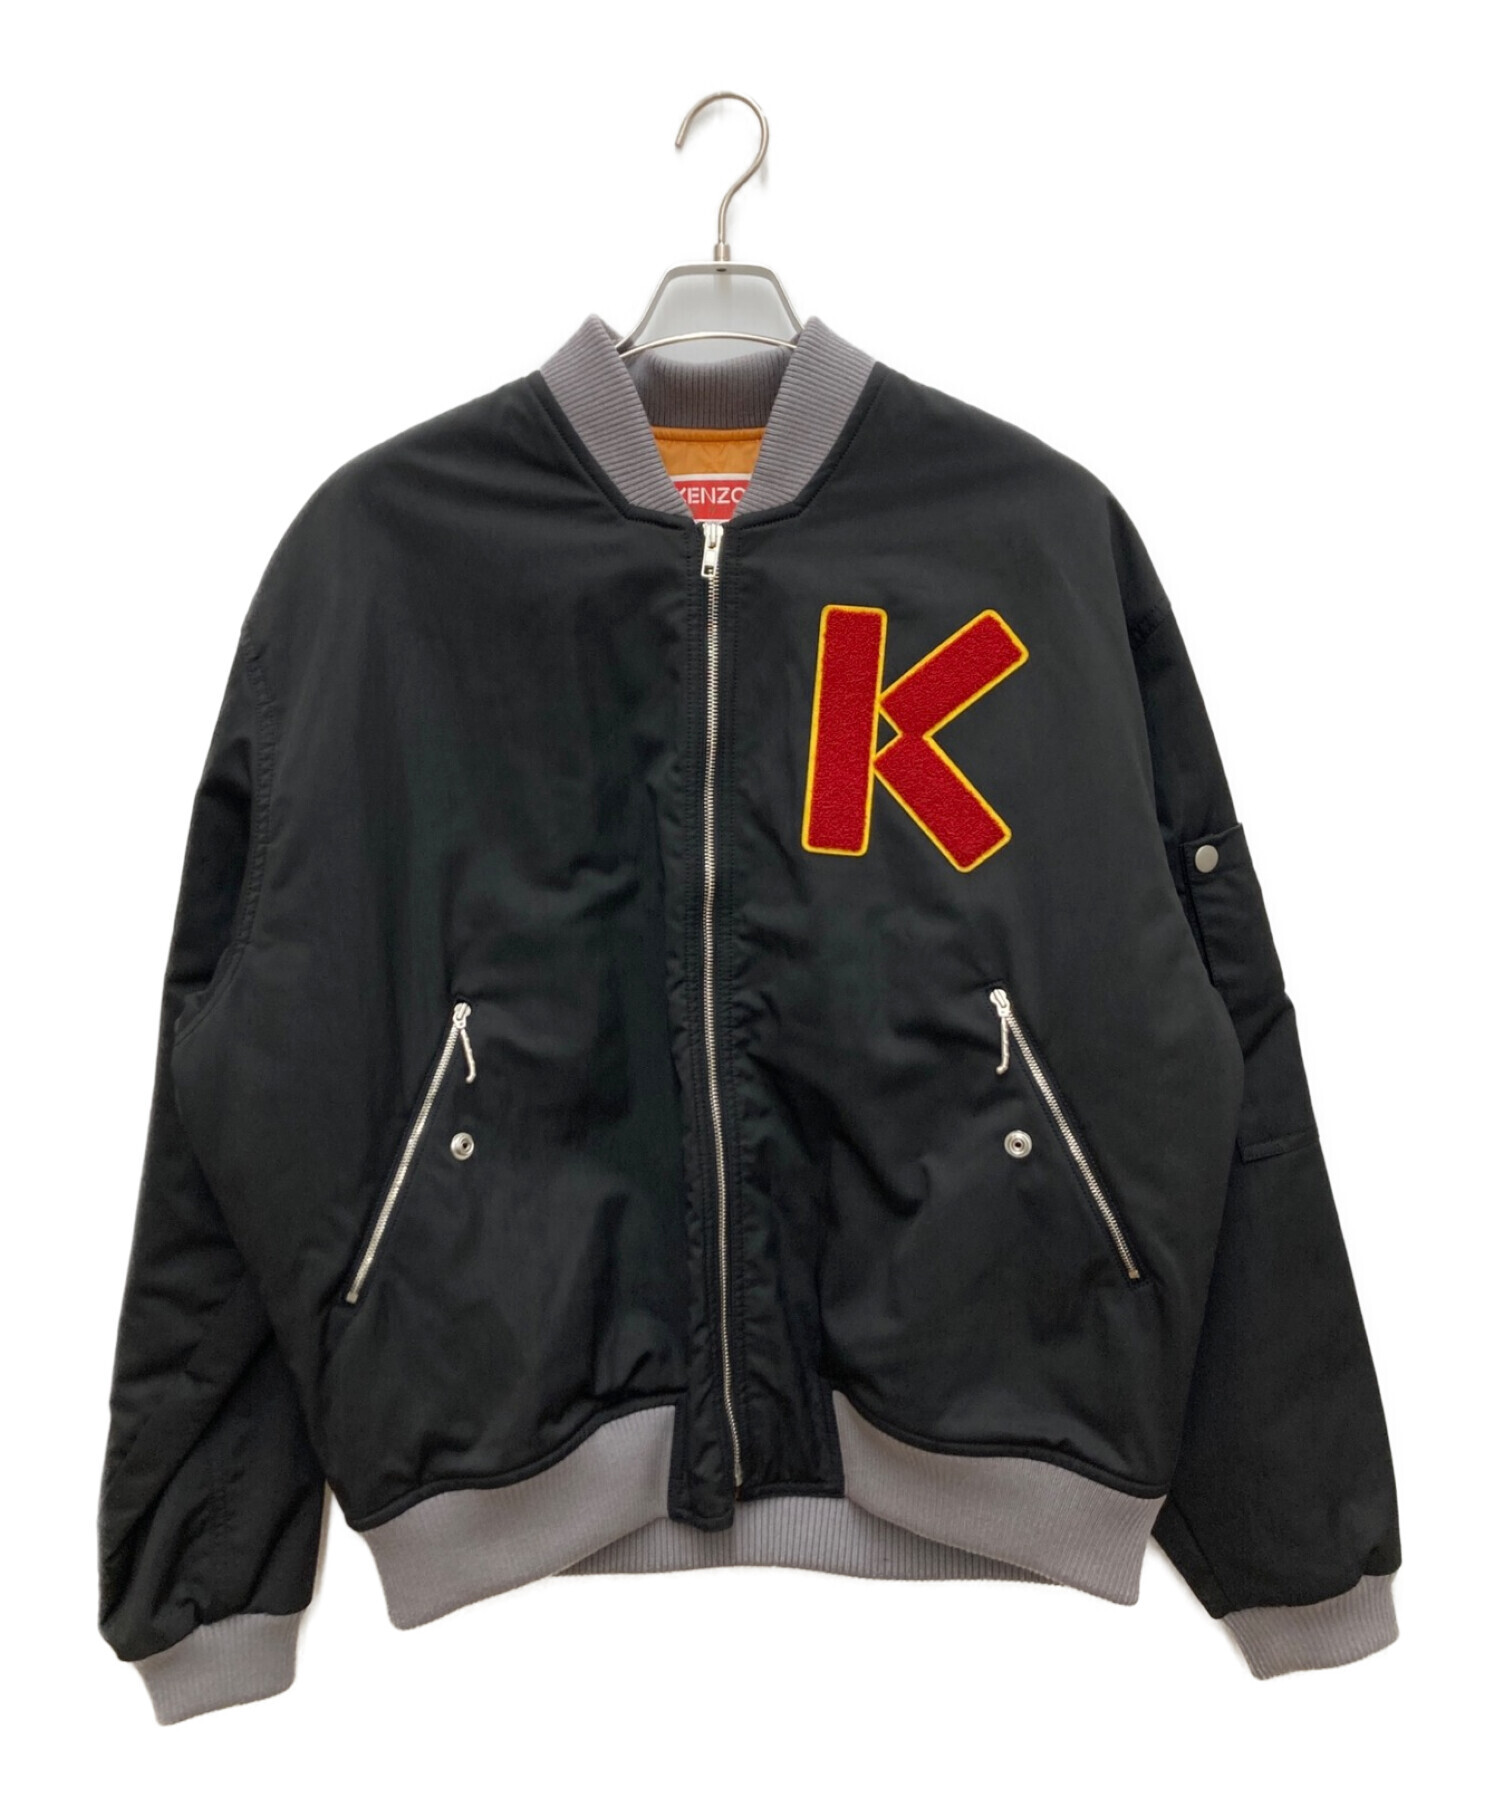 KENZO (ケンゾー) bomber jacket ブラック サイズ:L